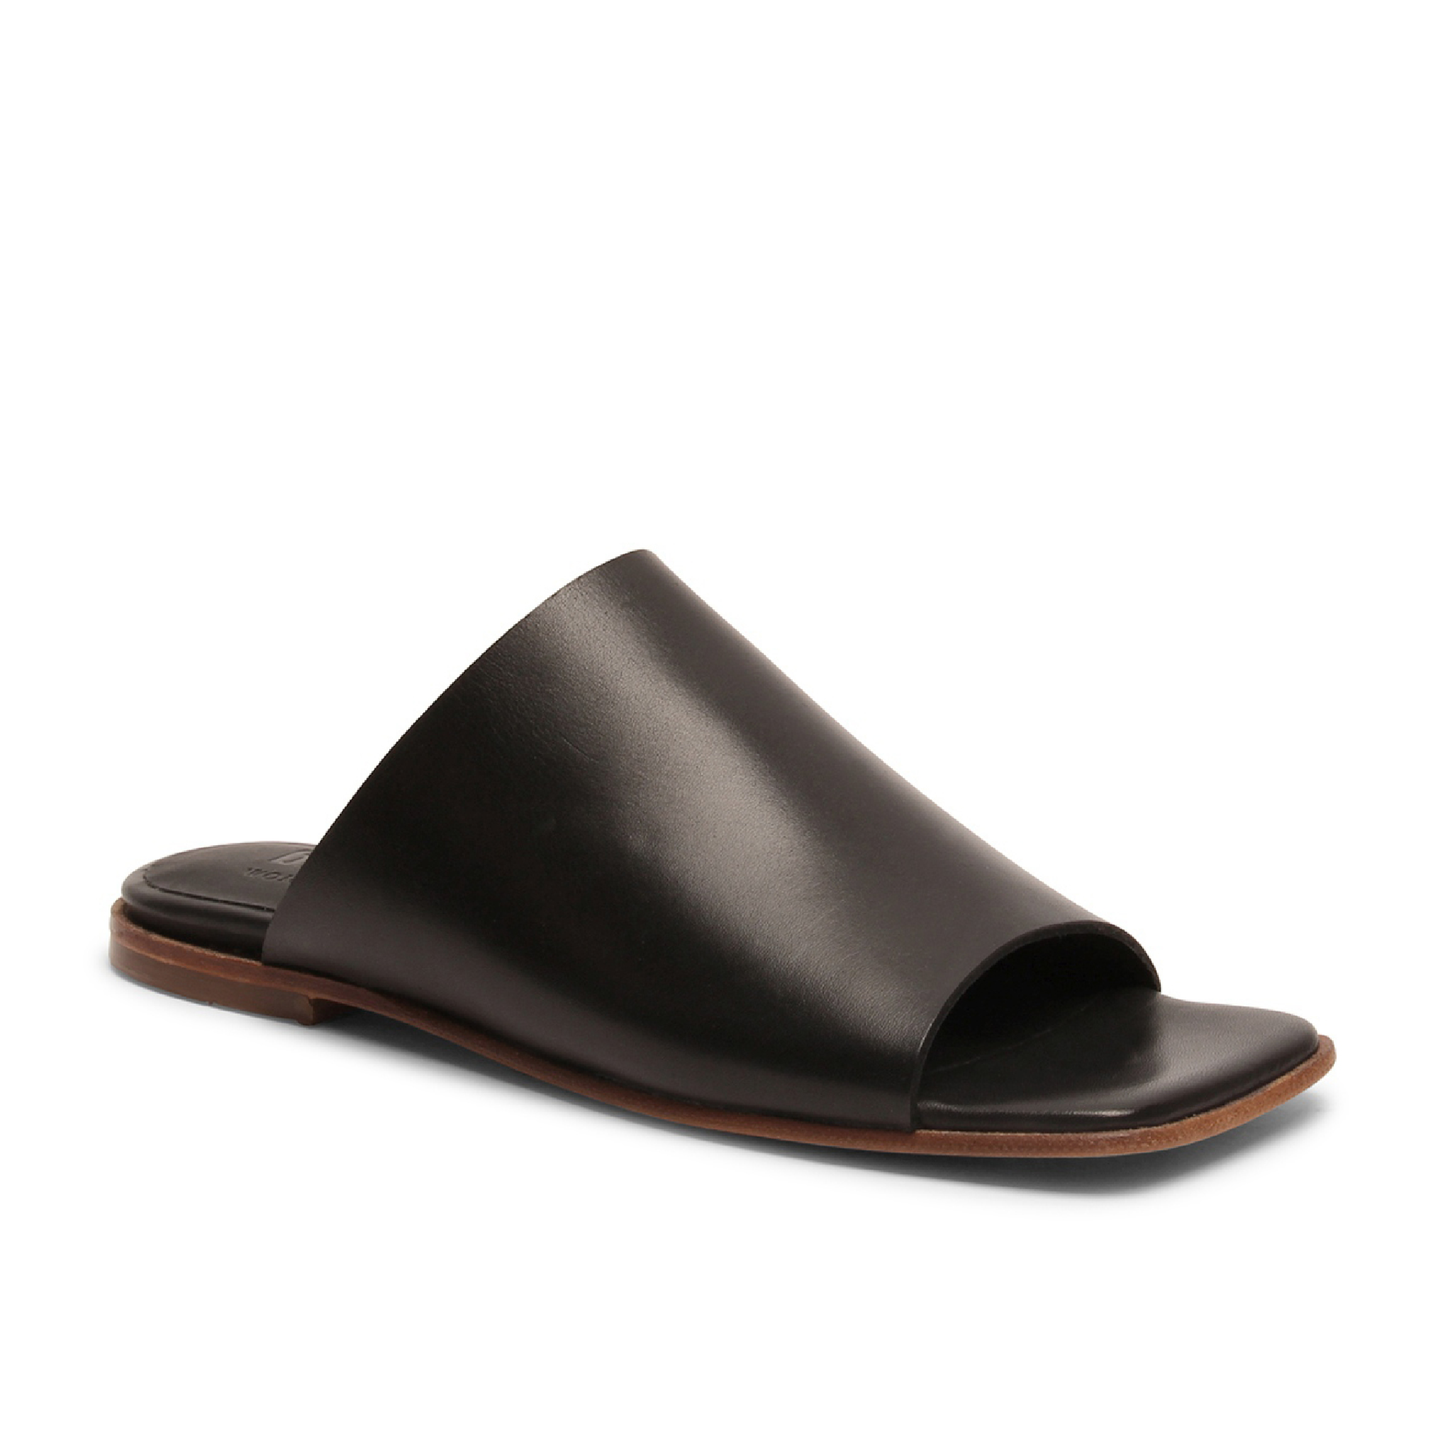 Laerke Sandals, Black 